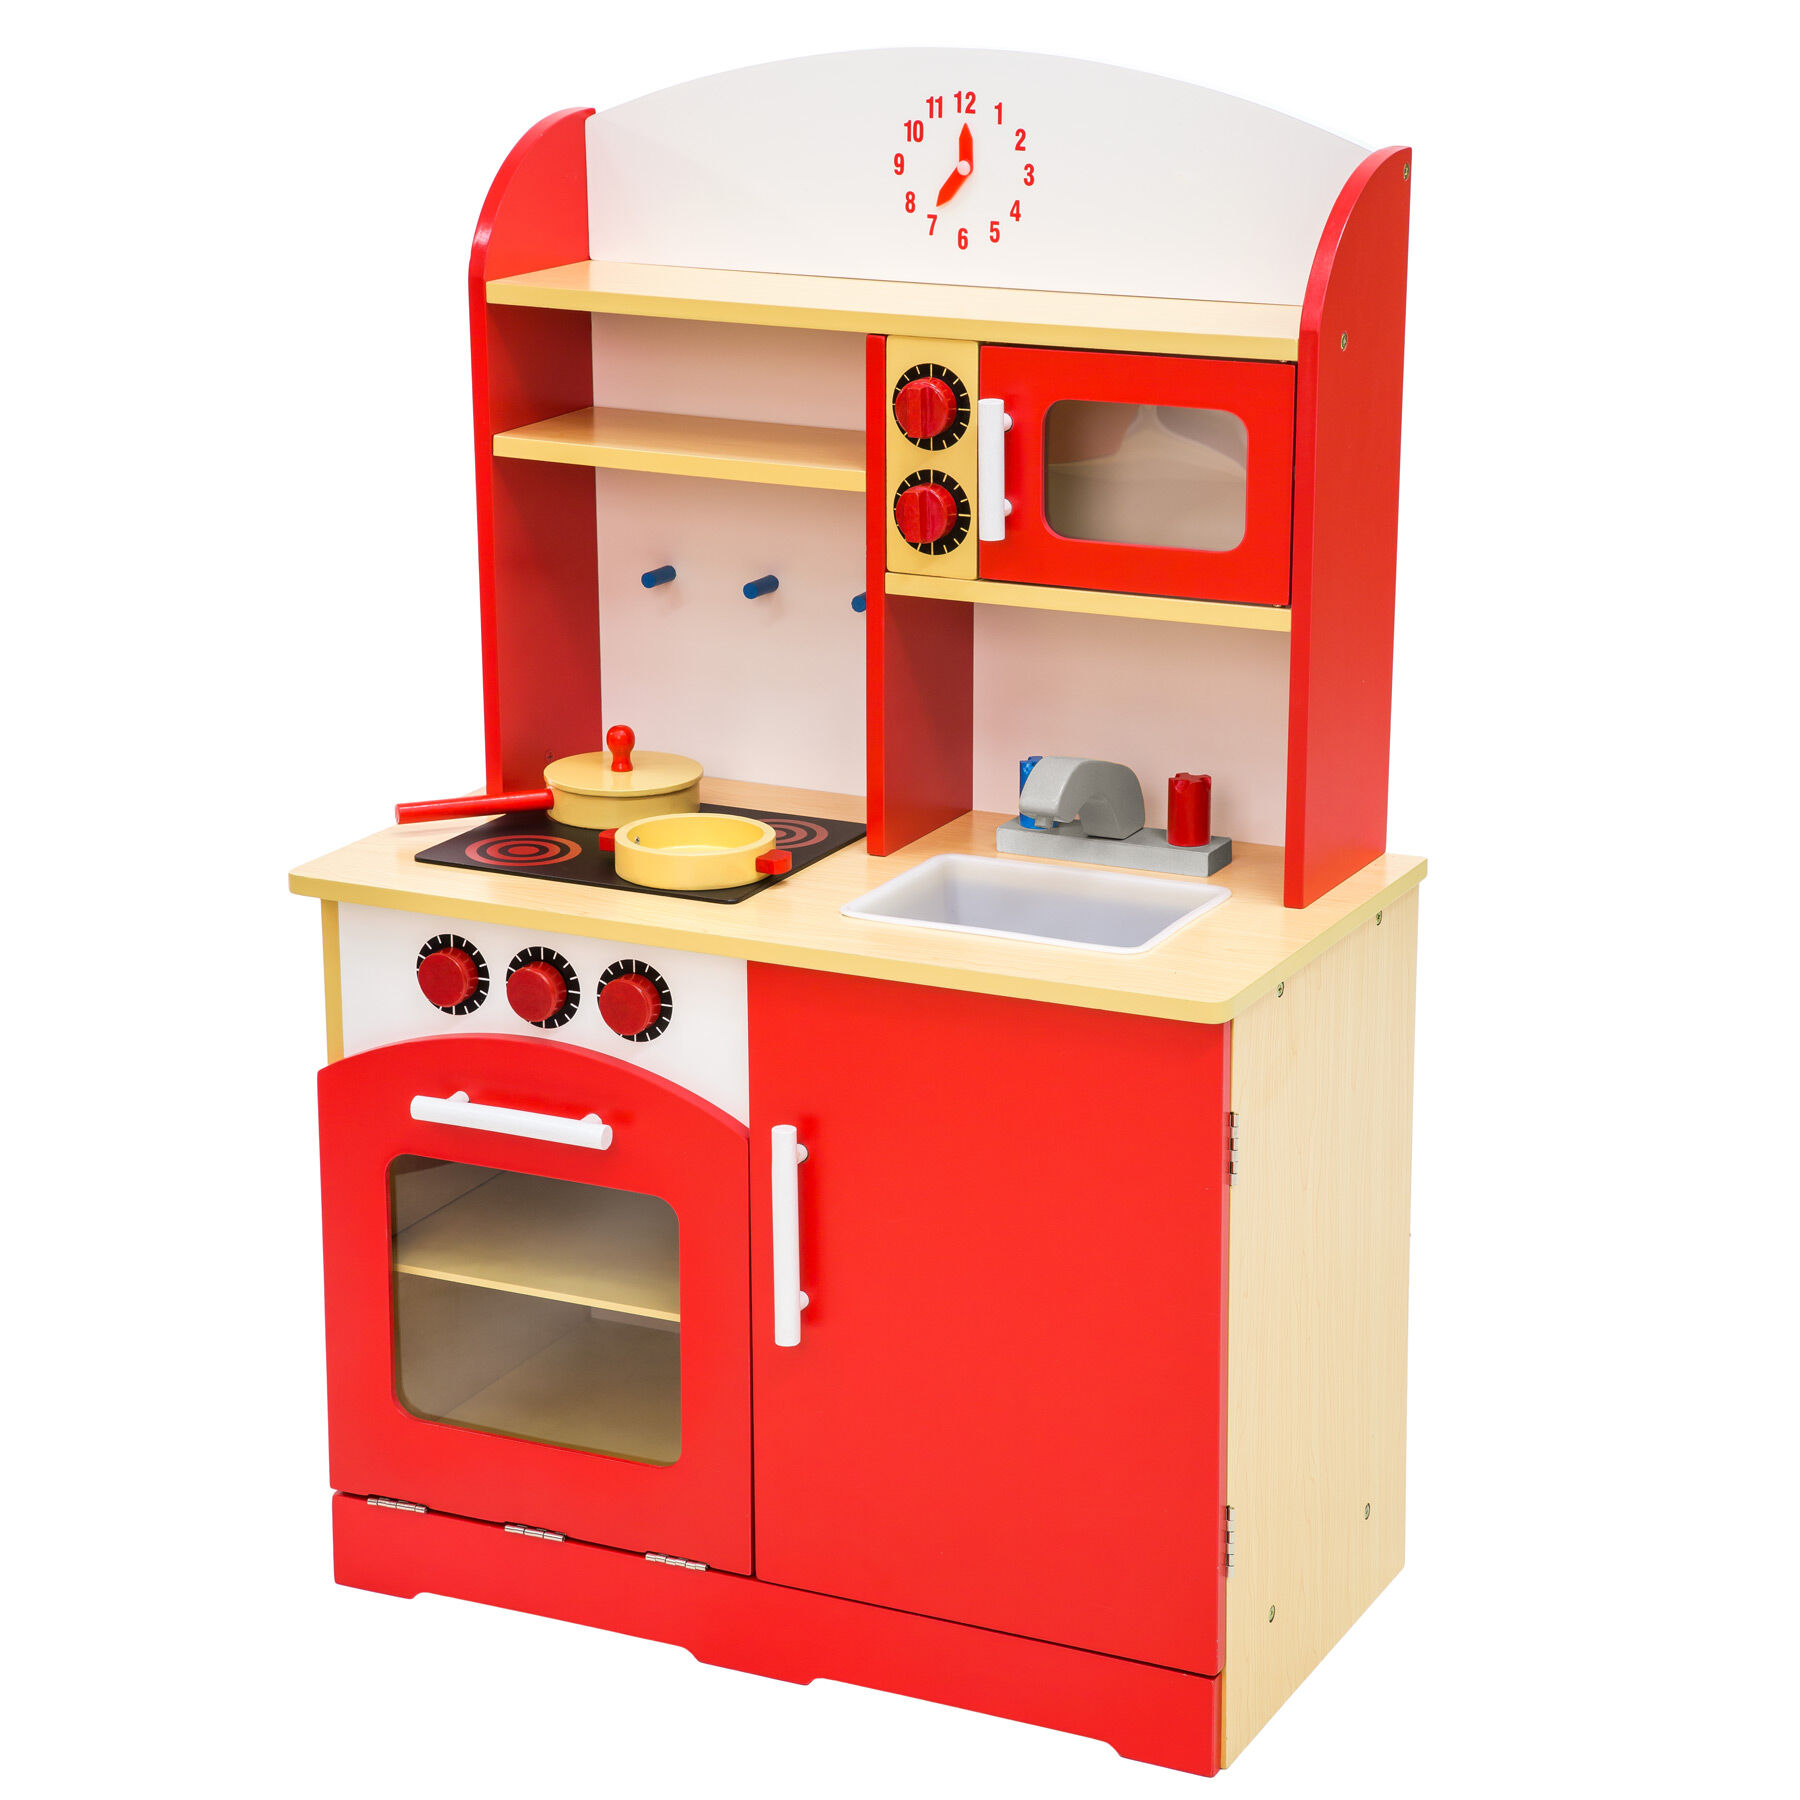 tectake Dětská dřevěná kuchyňka - červená